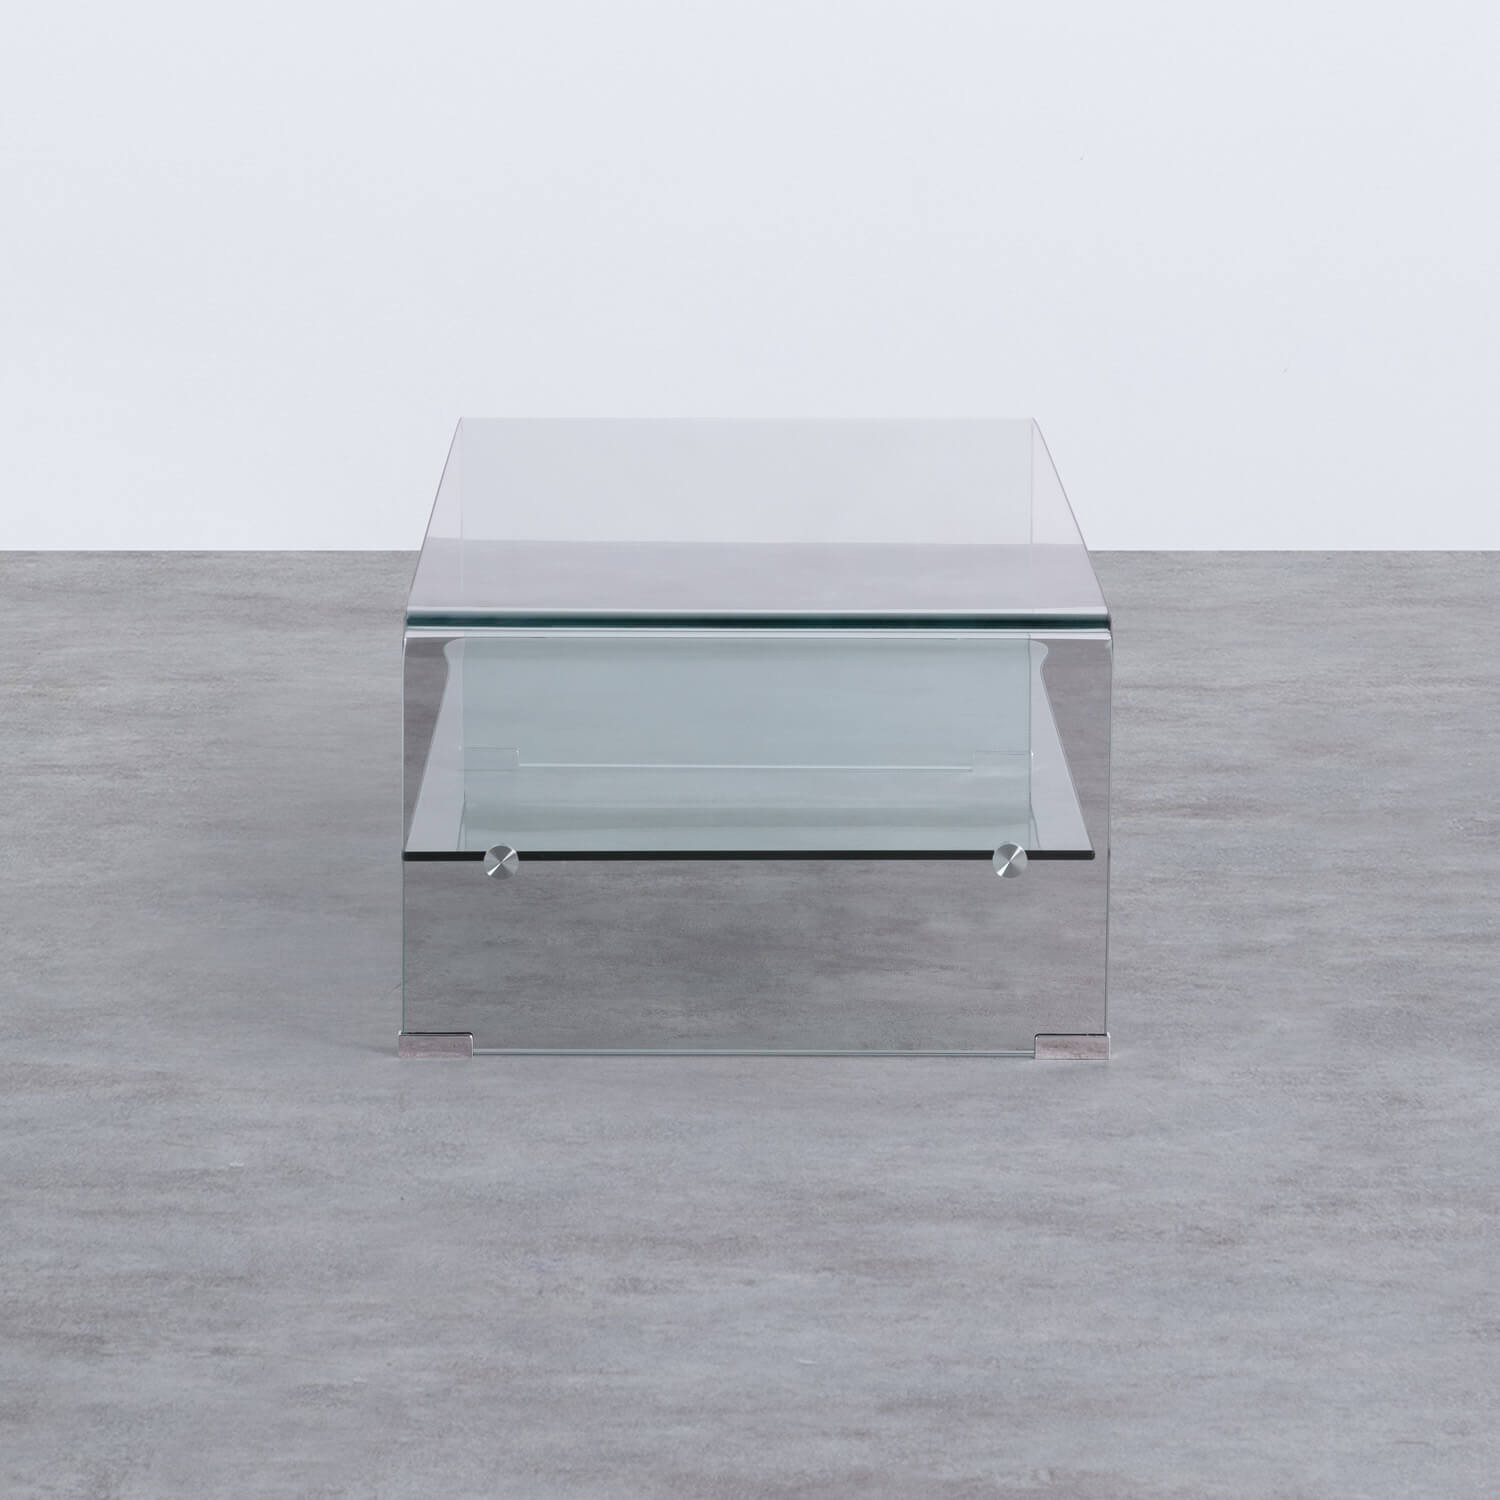 Tavolino da Caffé Rettangolare in Cristallo (110x55 cm) Alessa, immagine della galleria 2